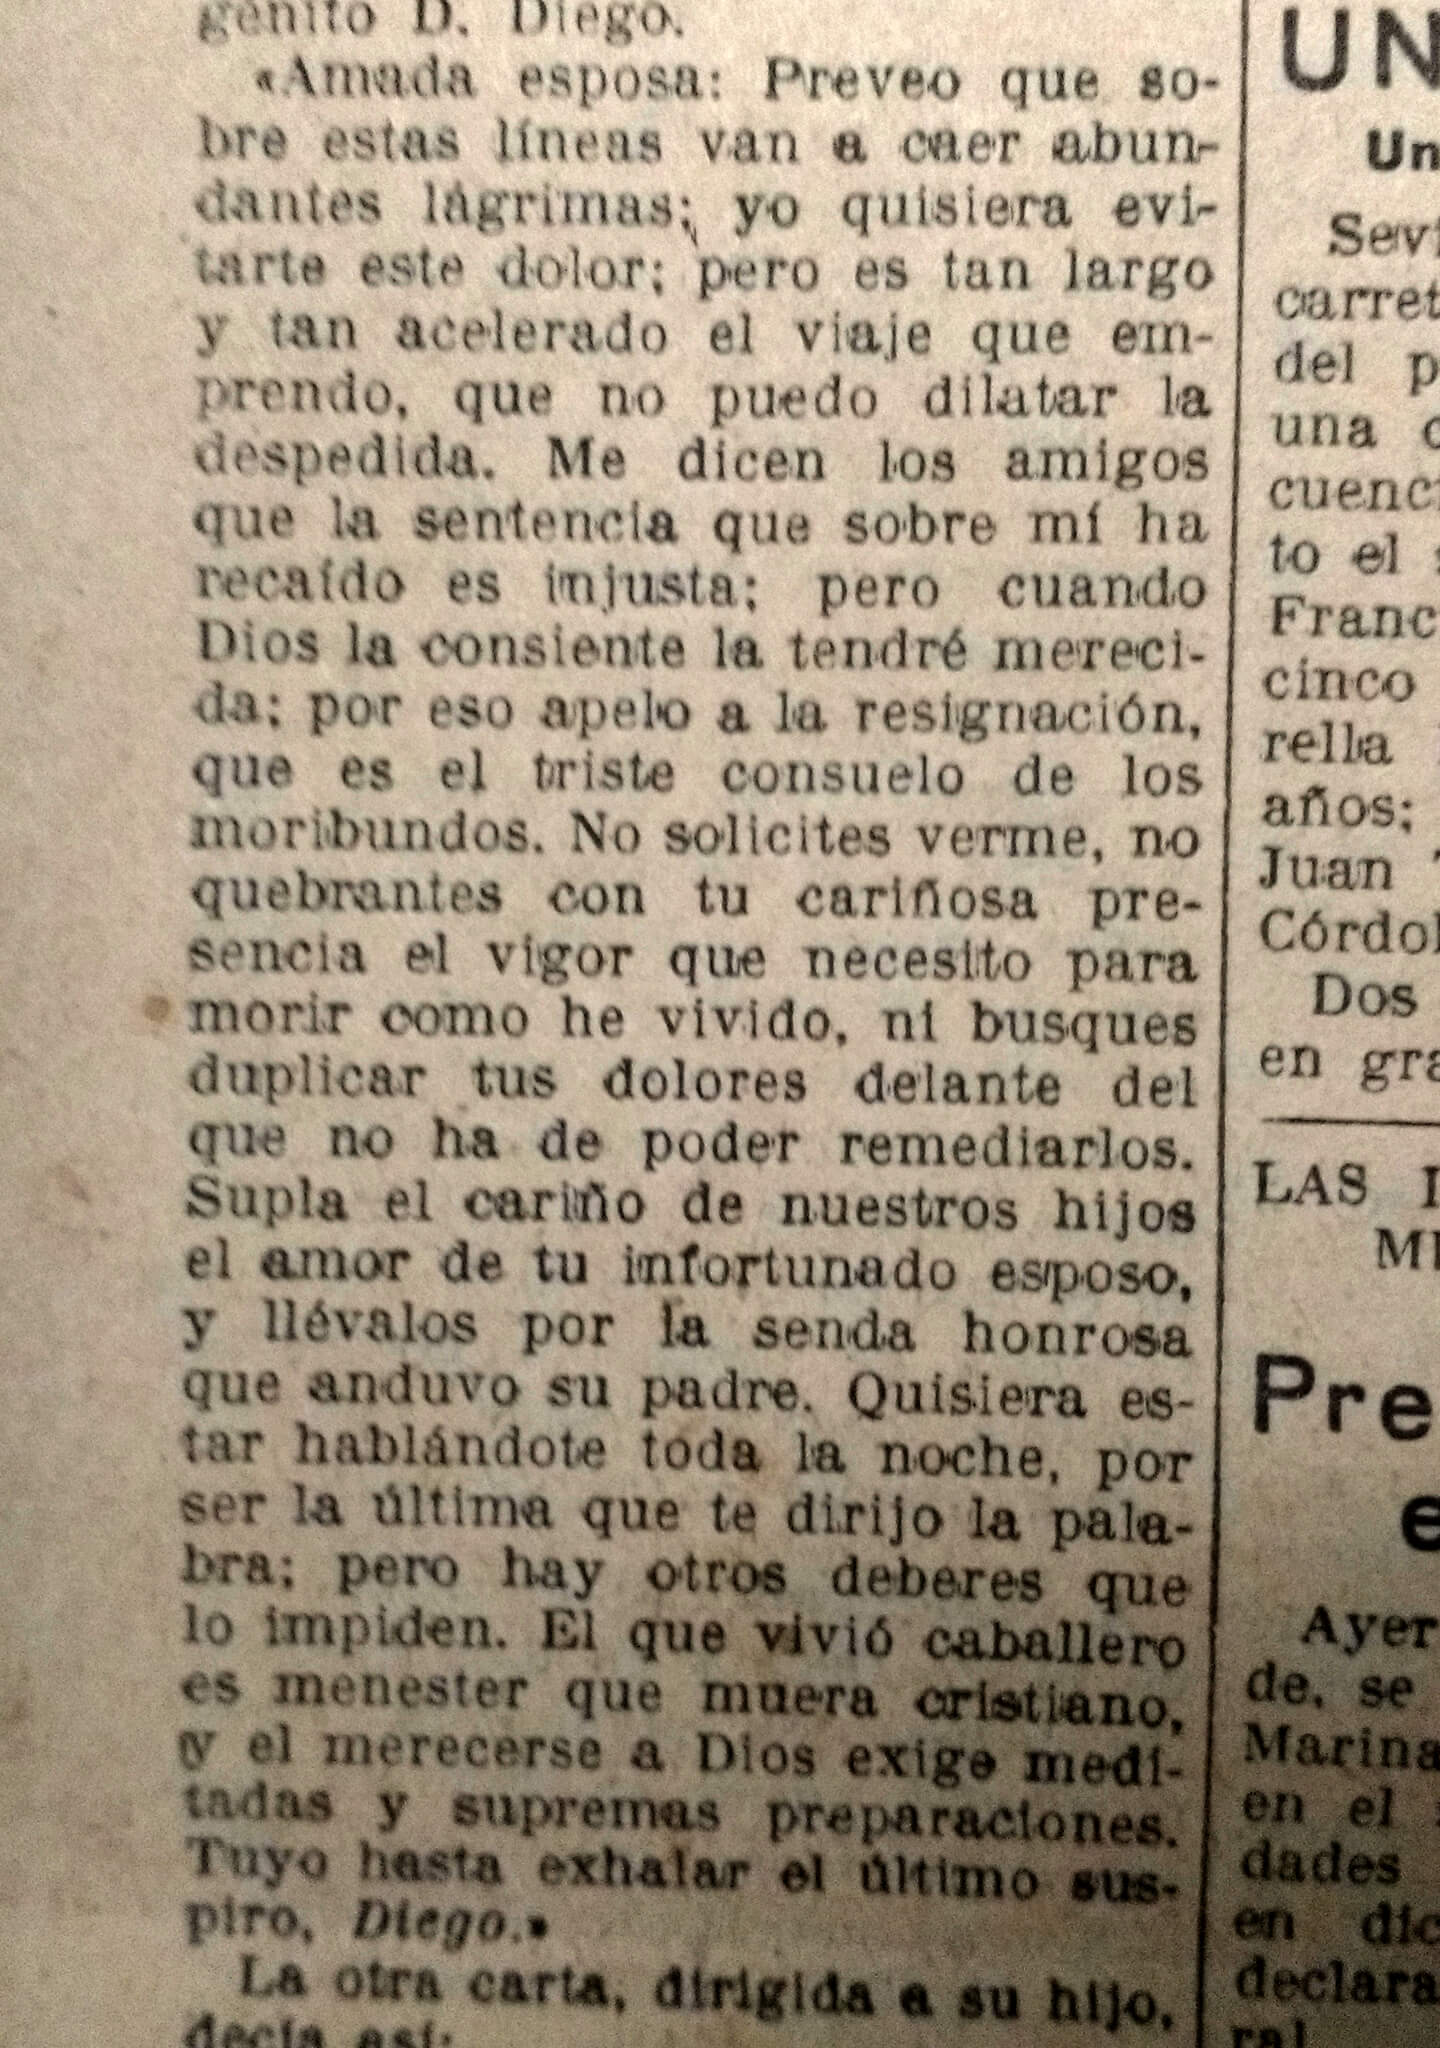 DIEGO DE LEÓN (14/10/1841)